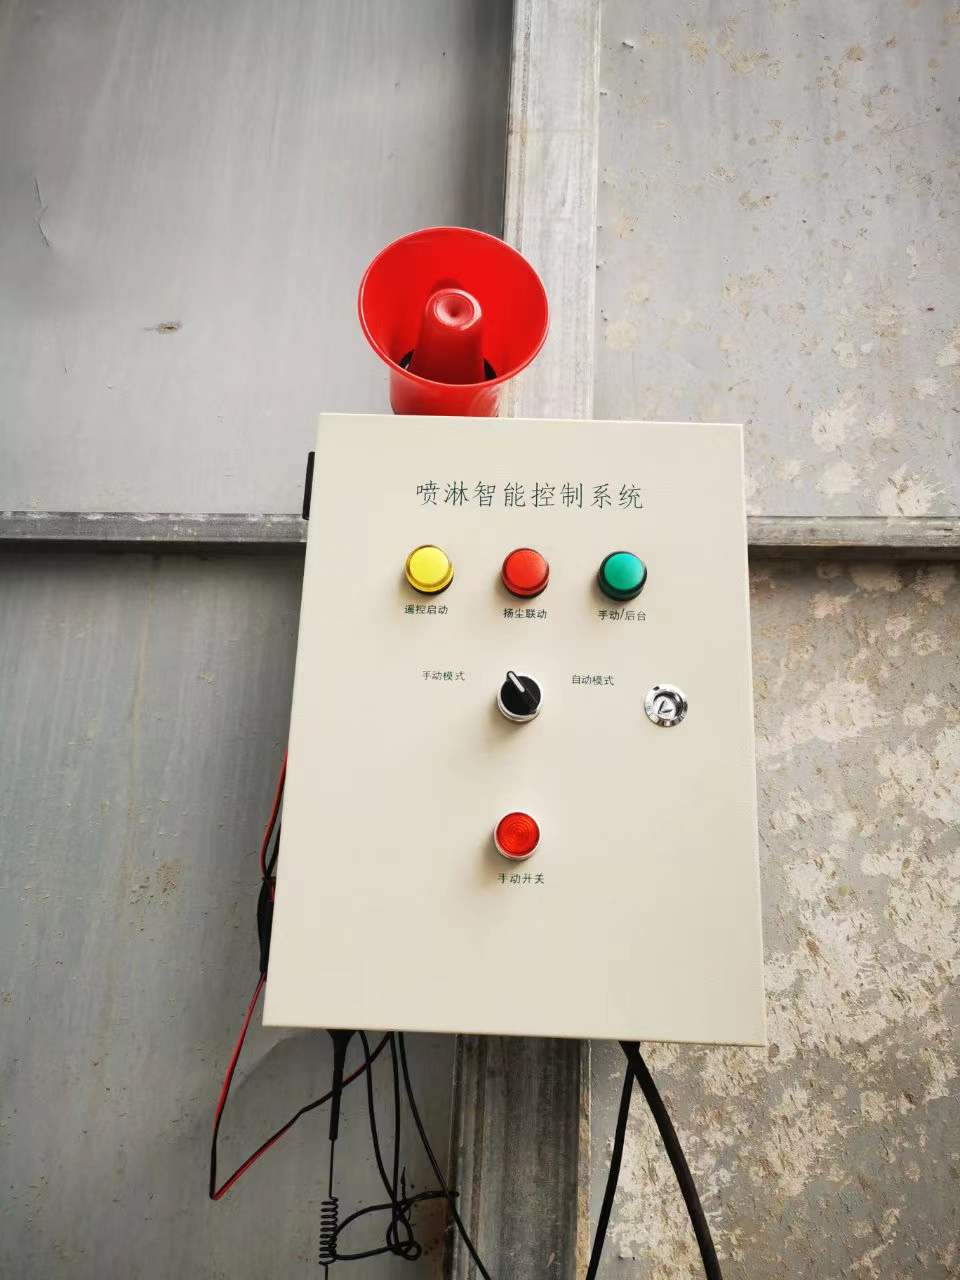 杭州远程联动控制系统厂家 工地喷淋系统40型 安徽赛芙智能科技有限公司